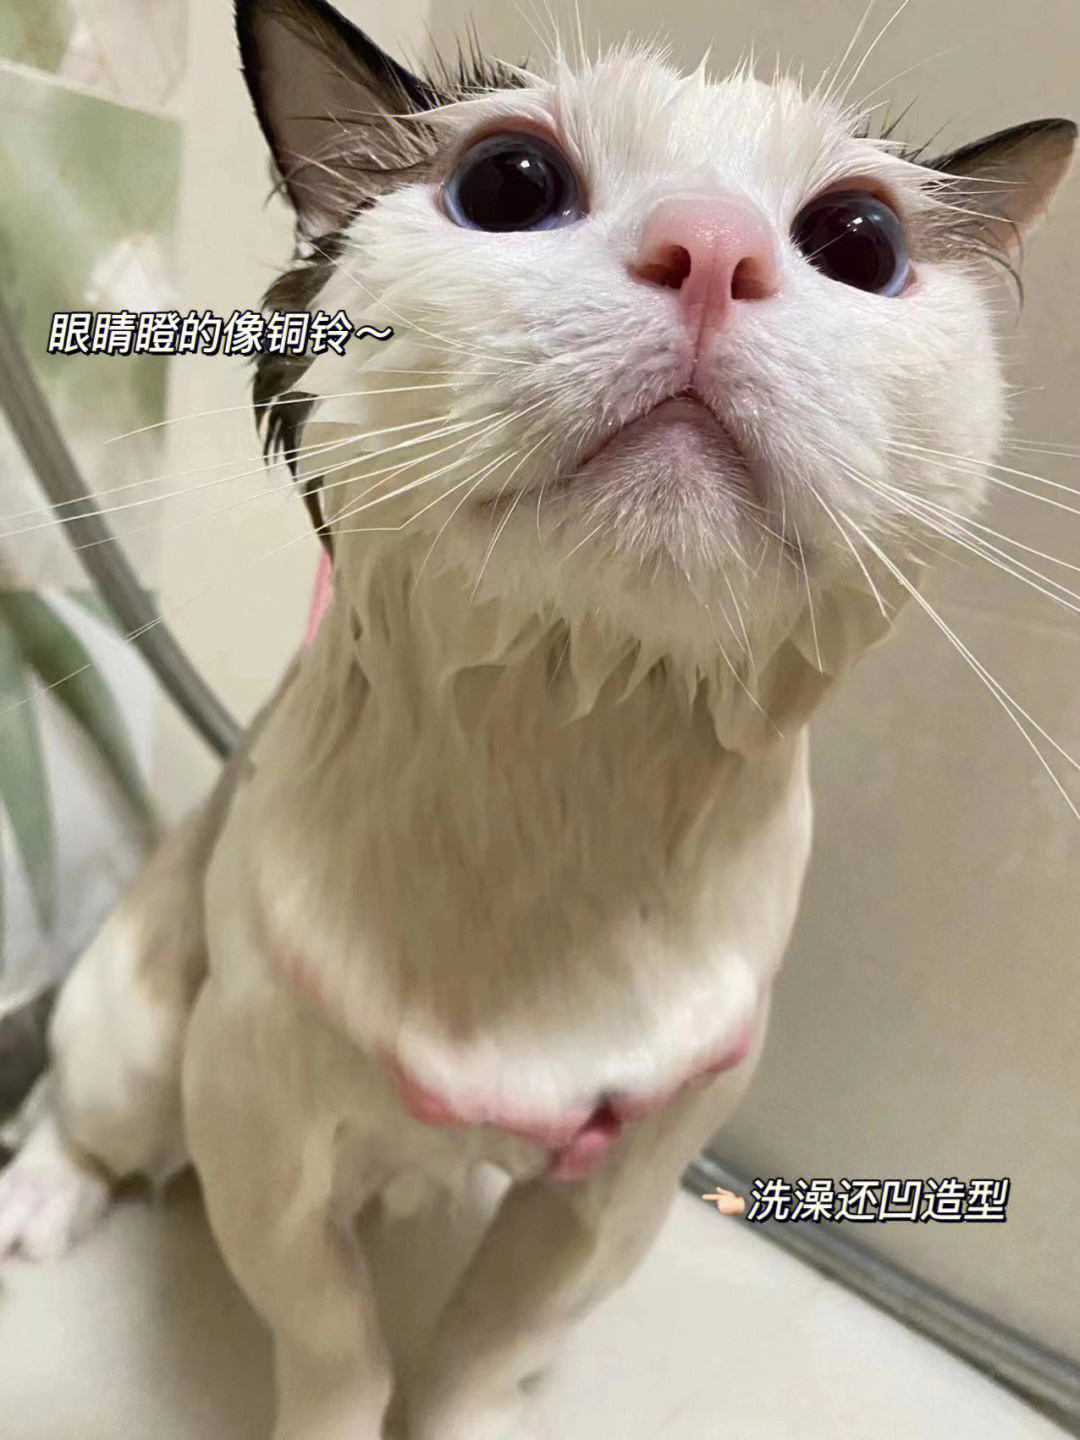 香香猫咪养成记快来吸刚洗完澡的猫咪